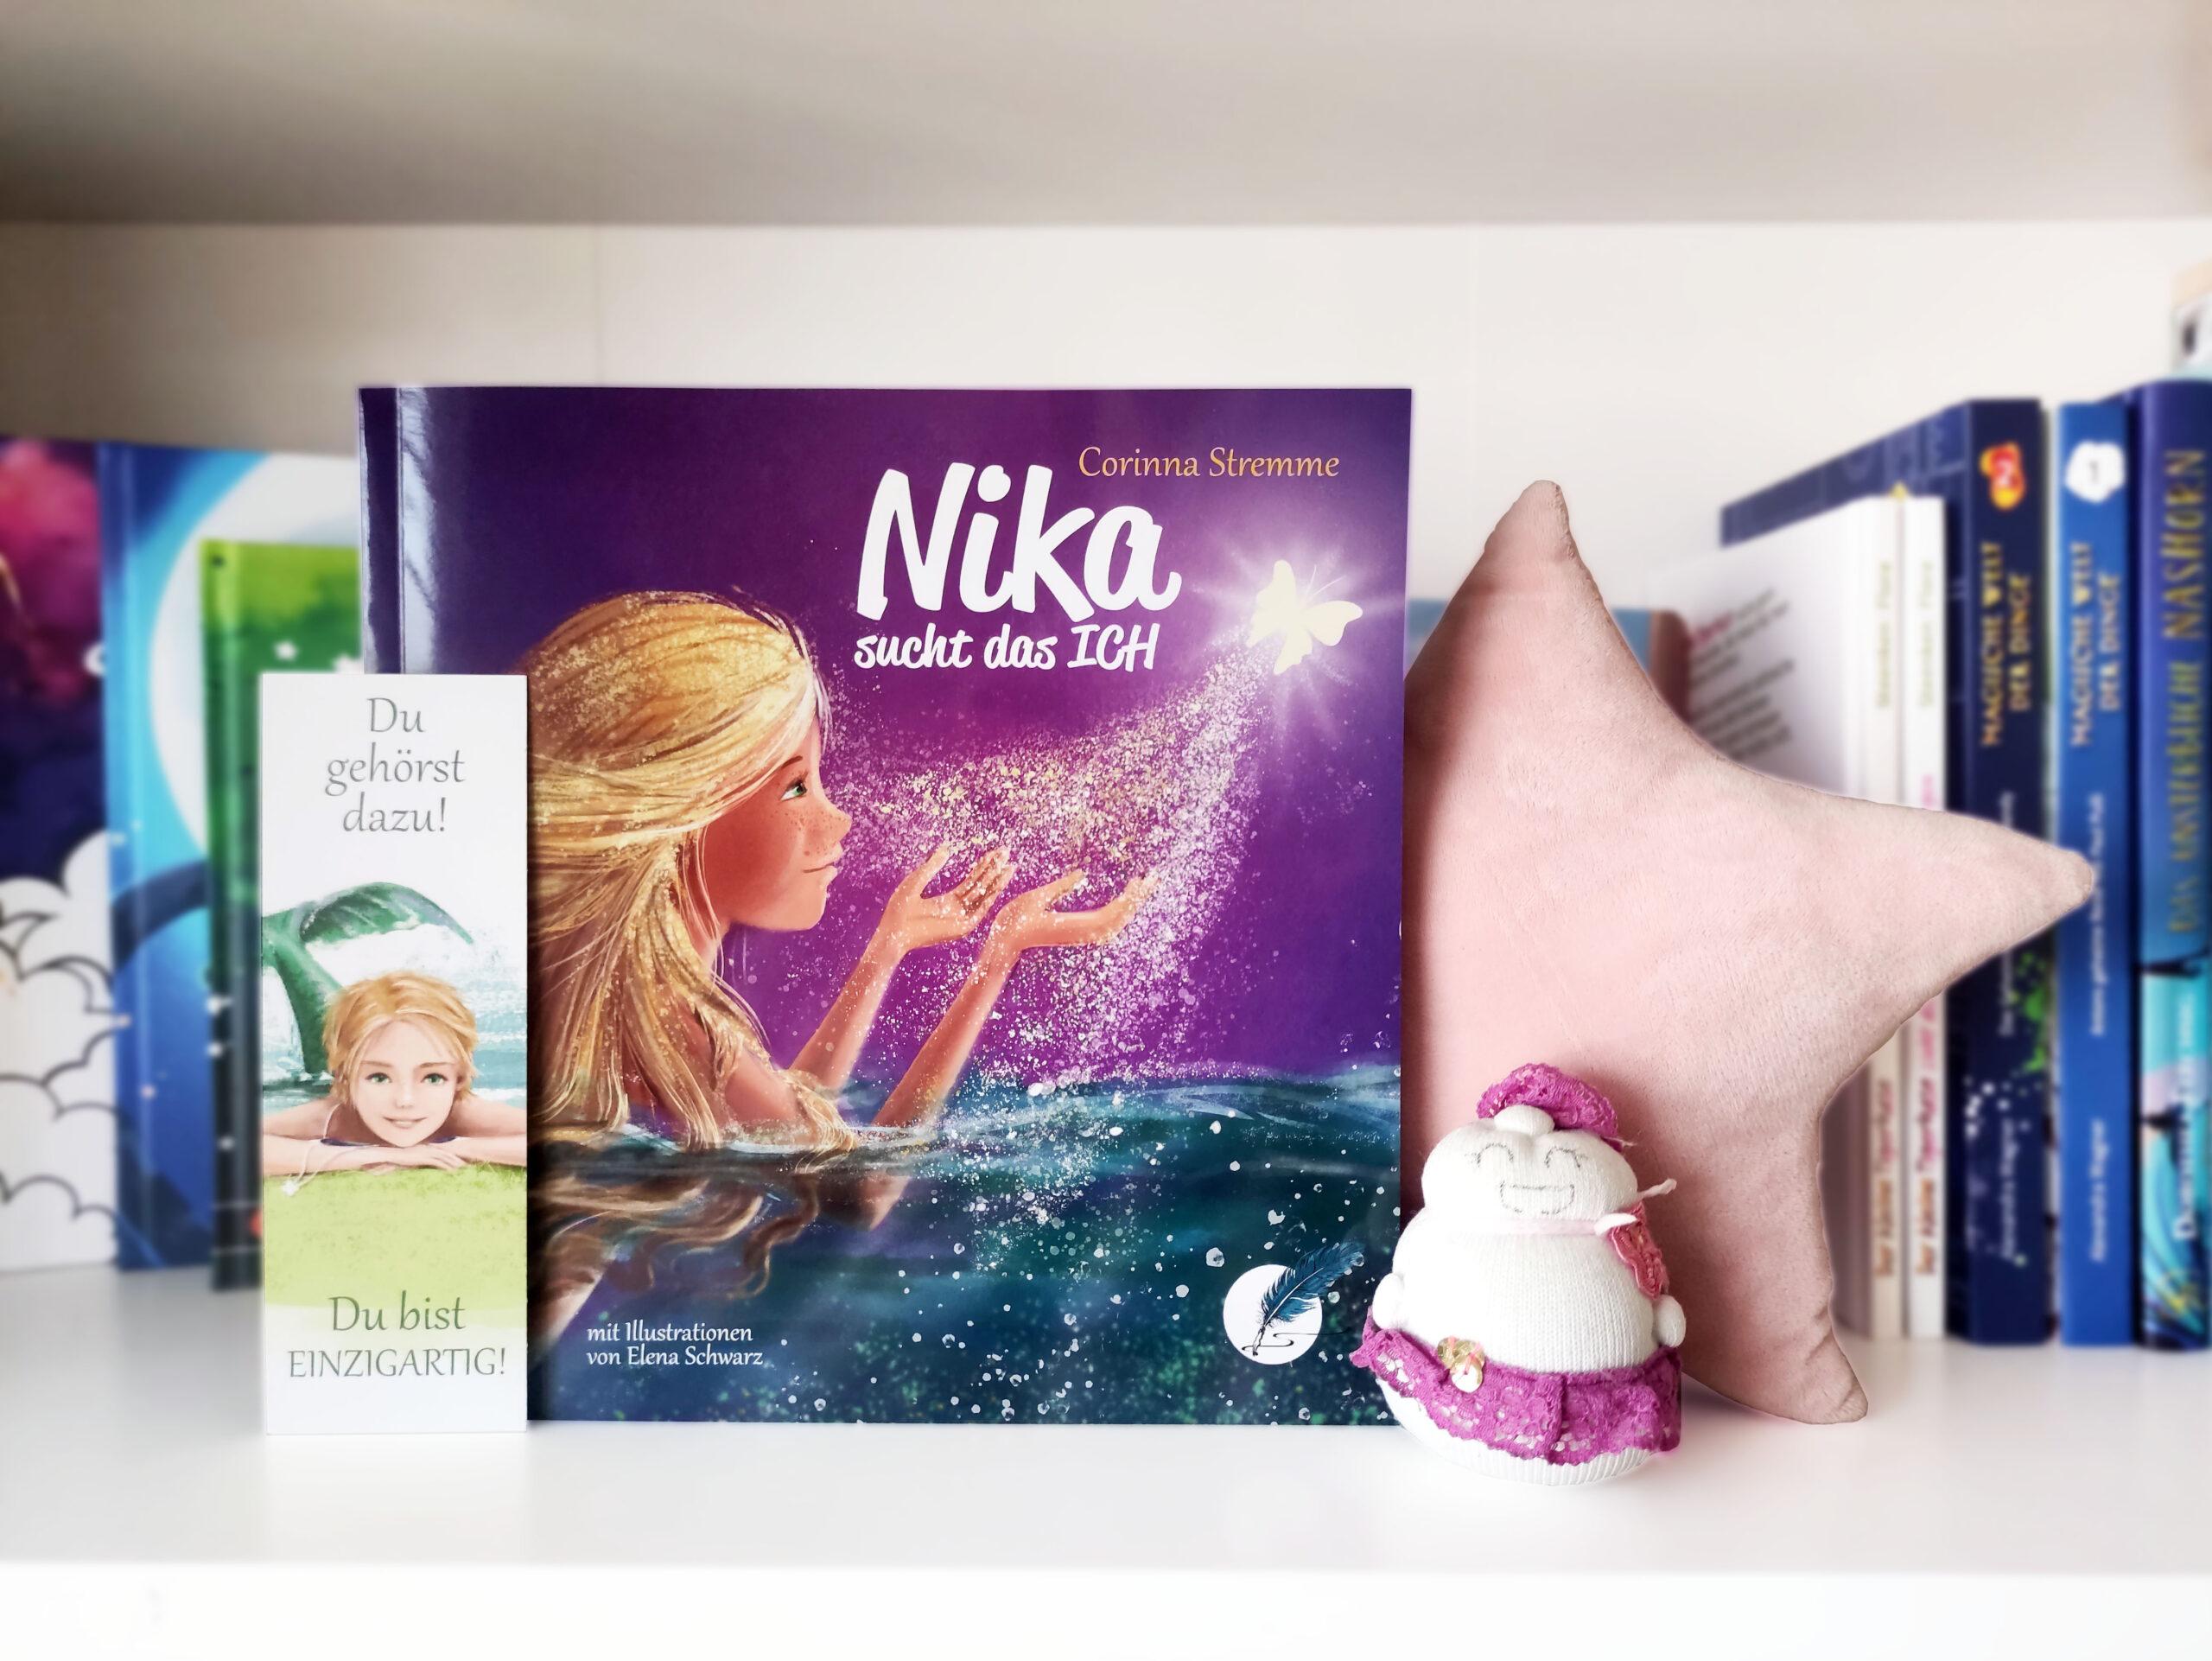 Das Buch Nika sucht das Ich steht vor anderen Büchern